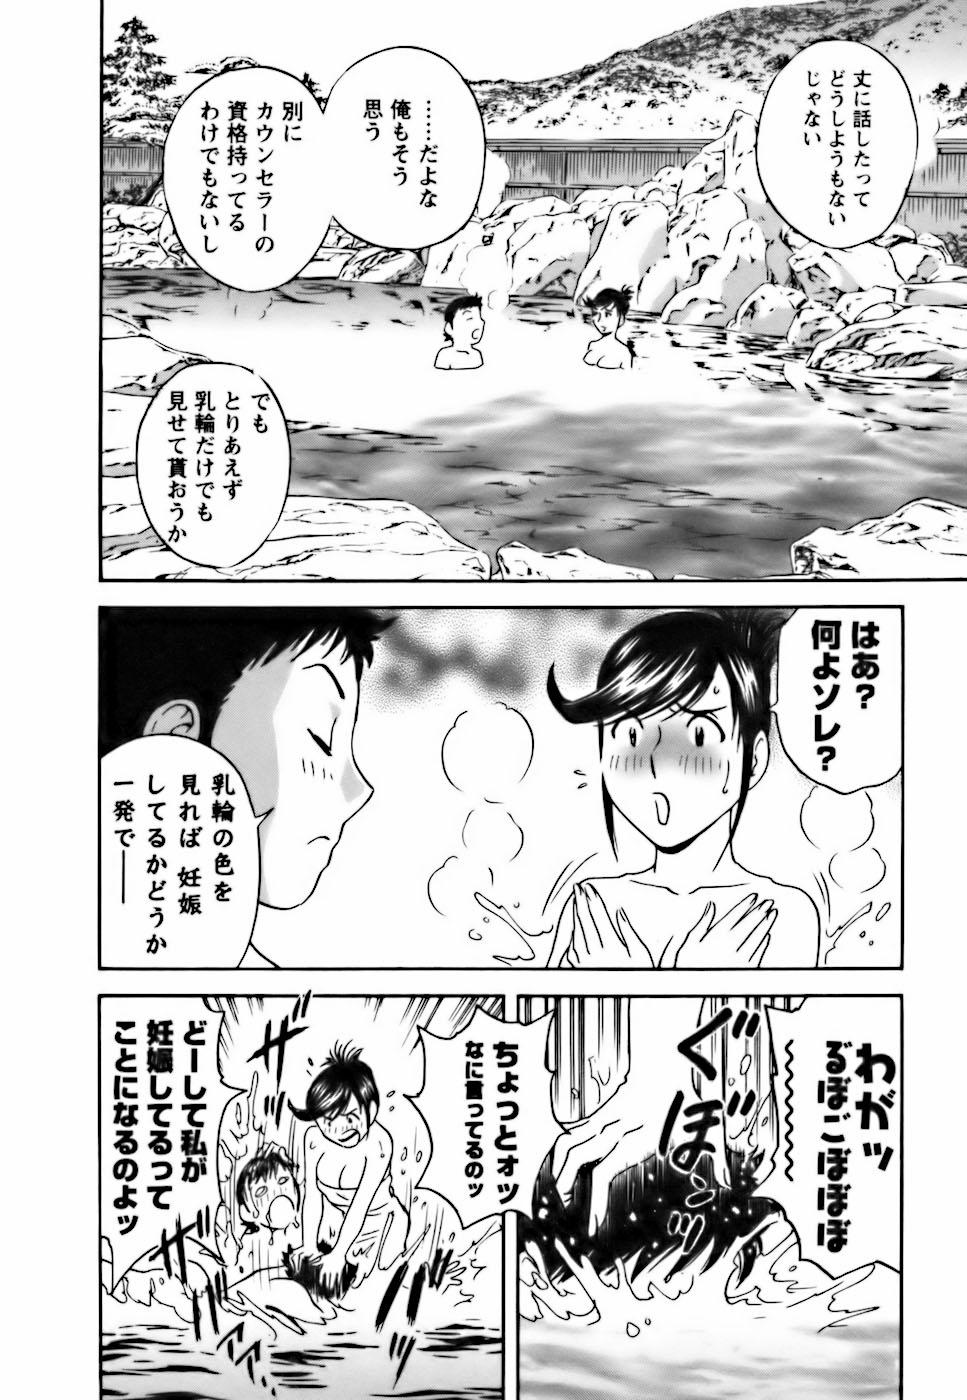 [Hidemaru] Mo-Retsu! Boin Sensei (Boing Boing Teacher) Vol.3 135